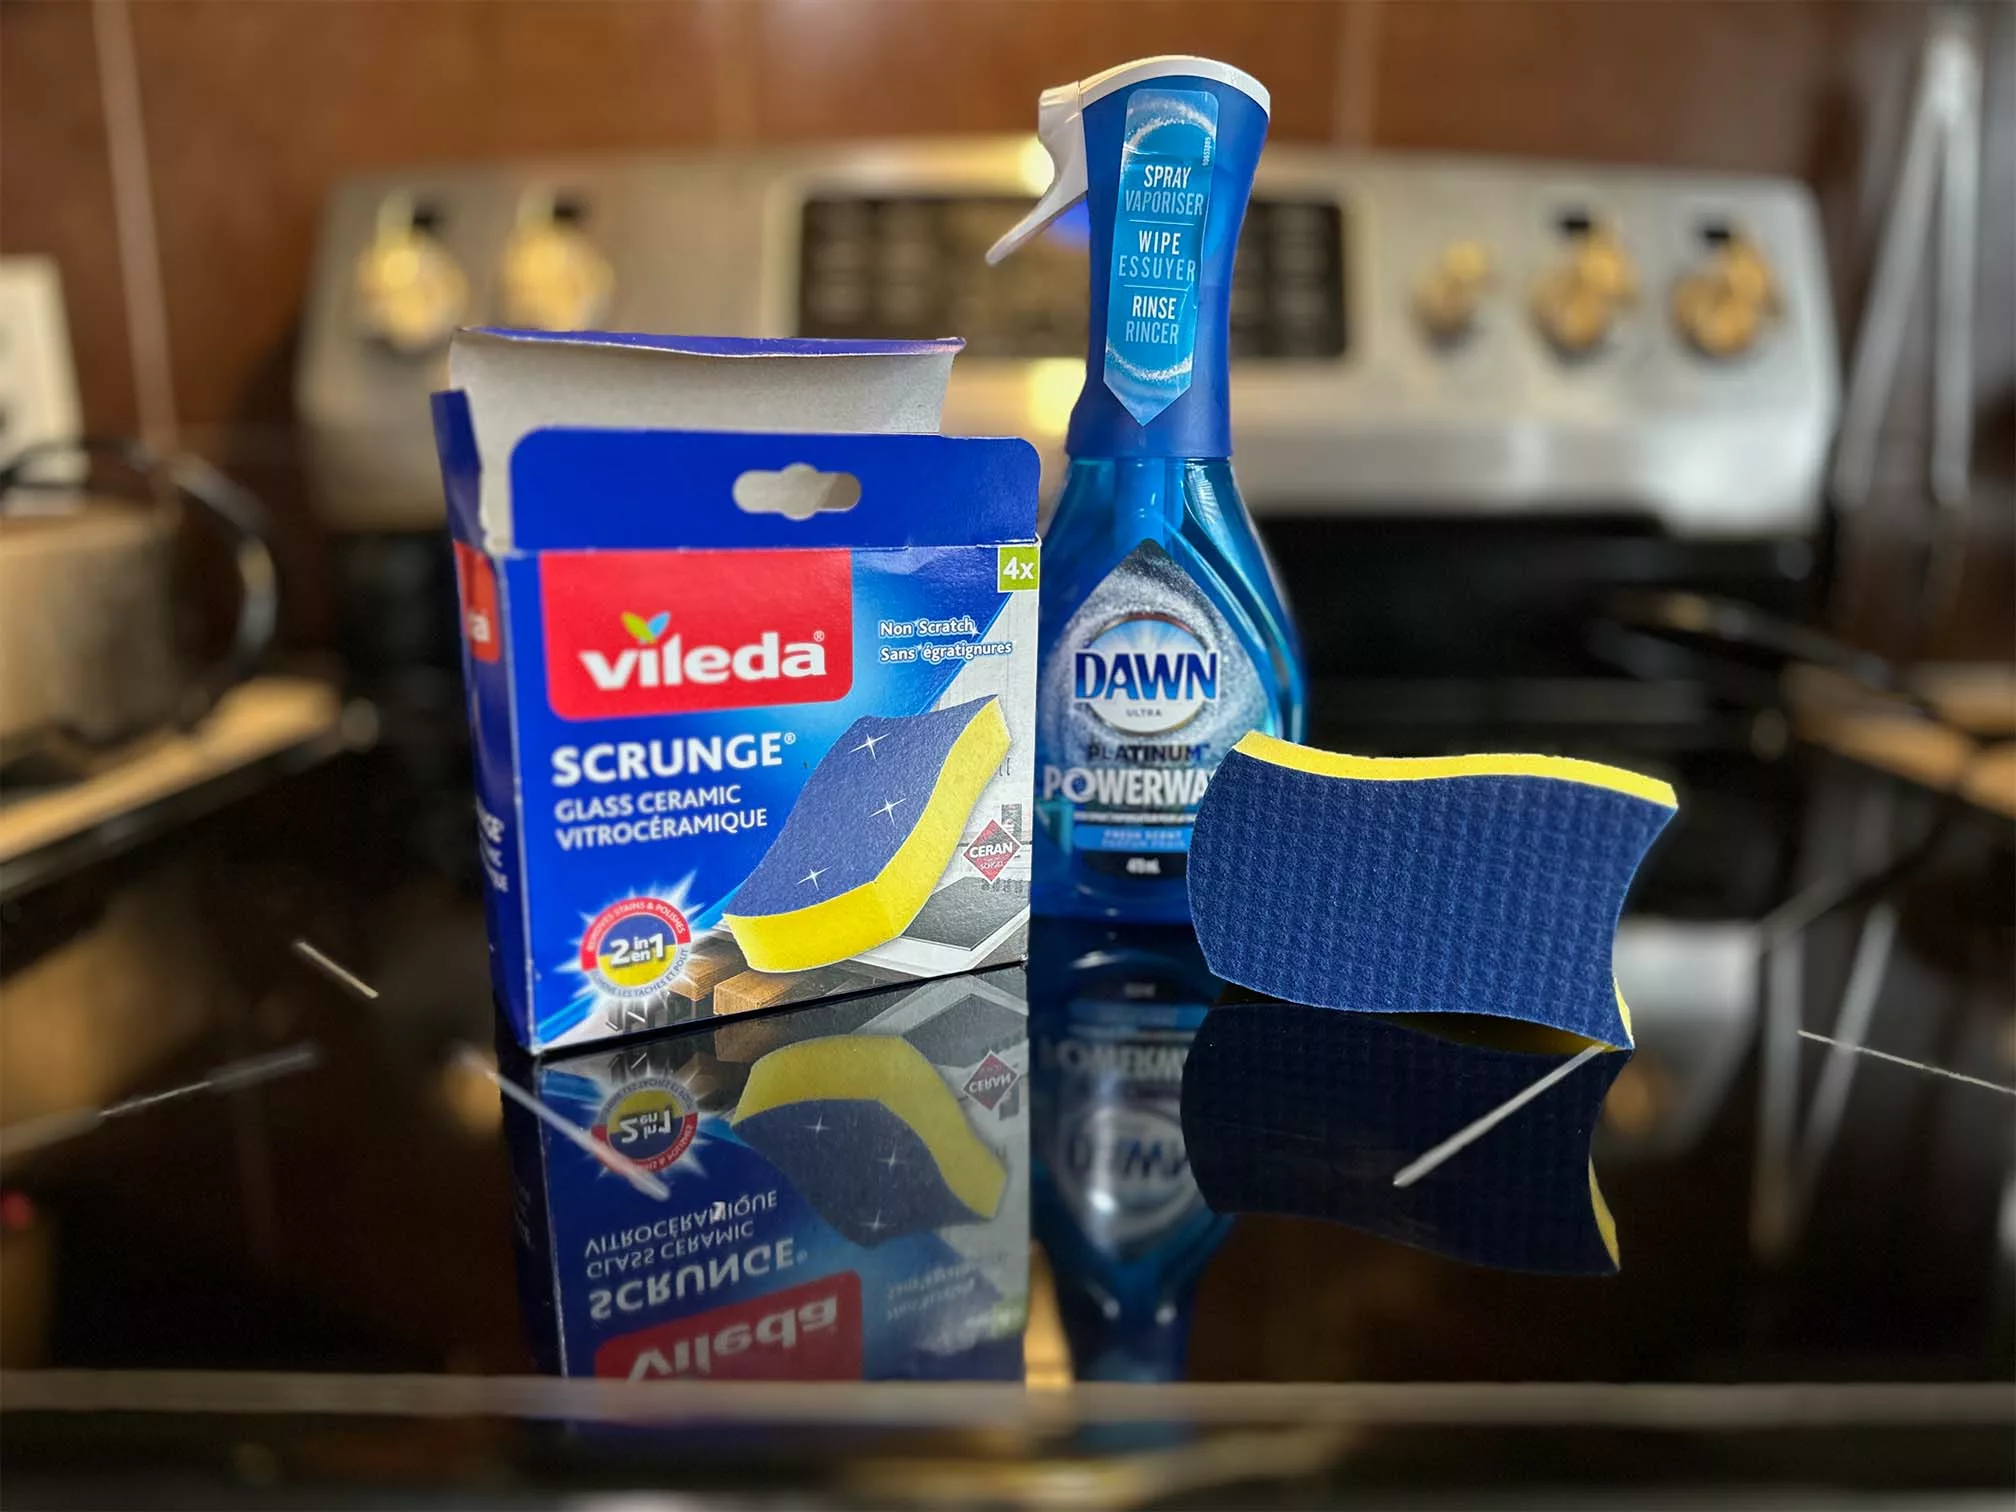 Vileda love it clean: products